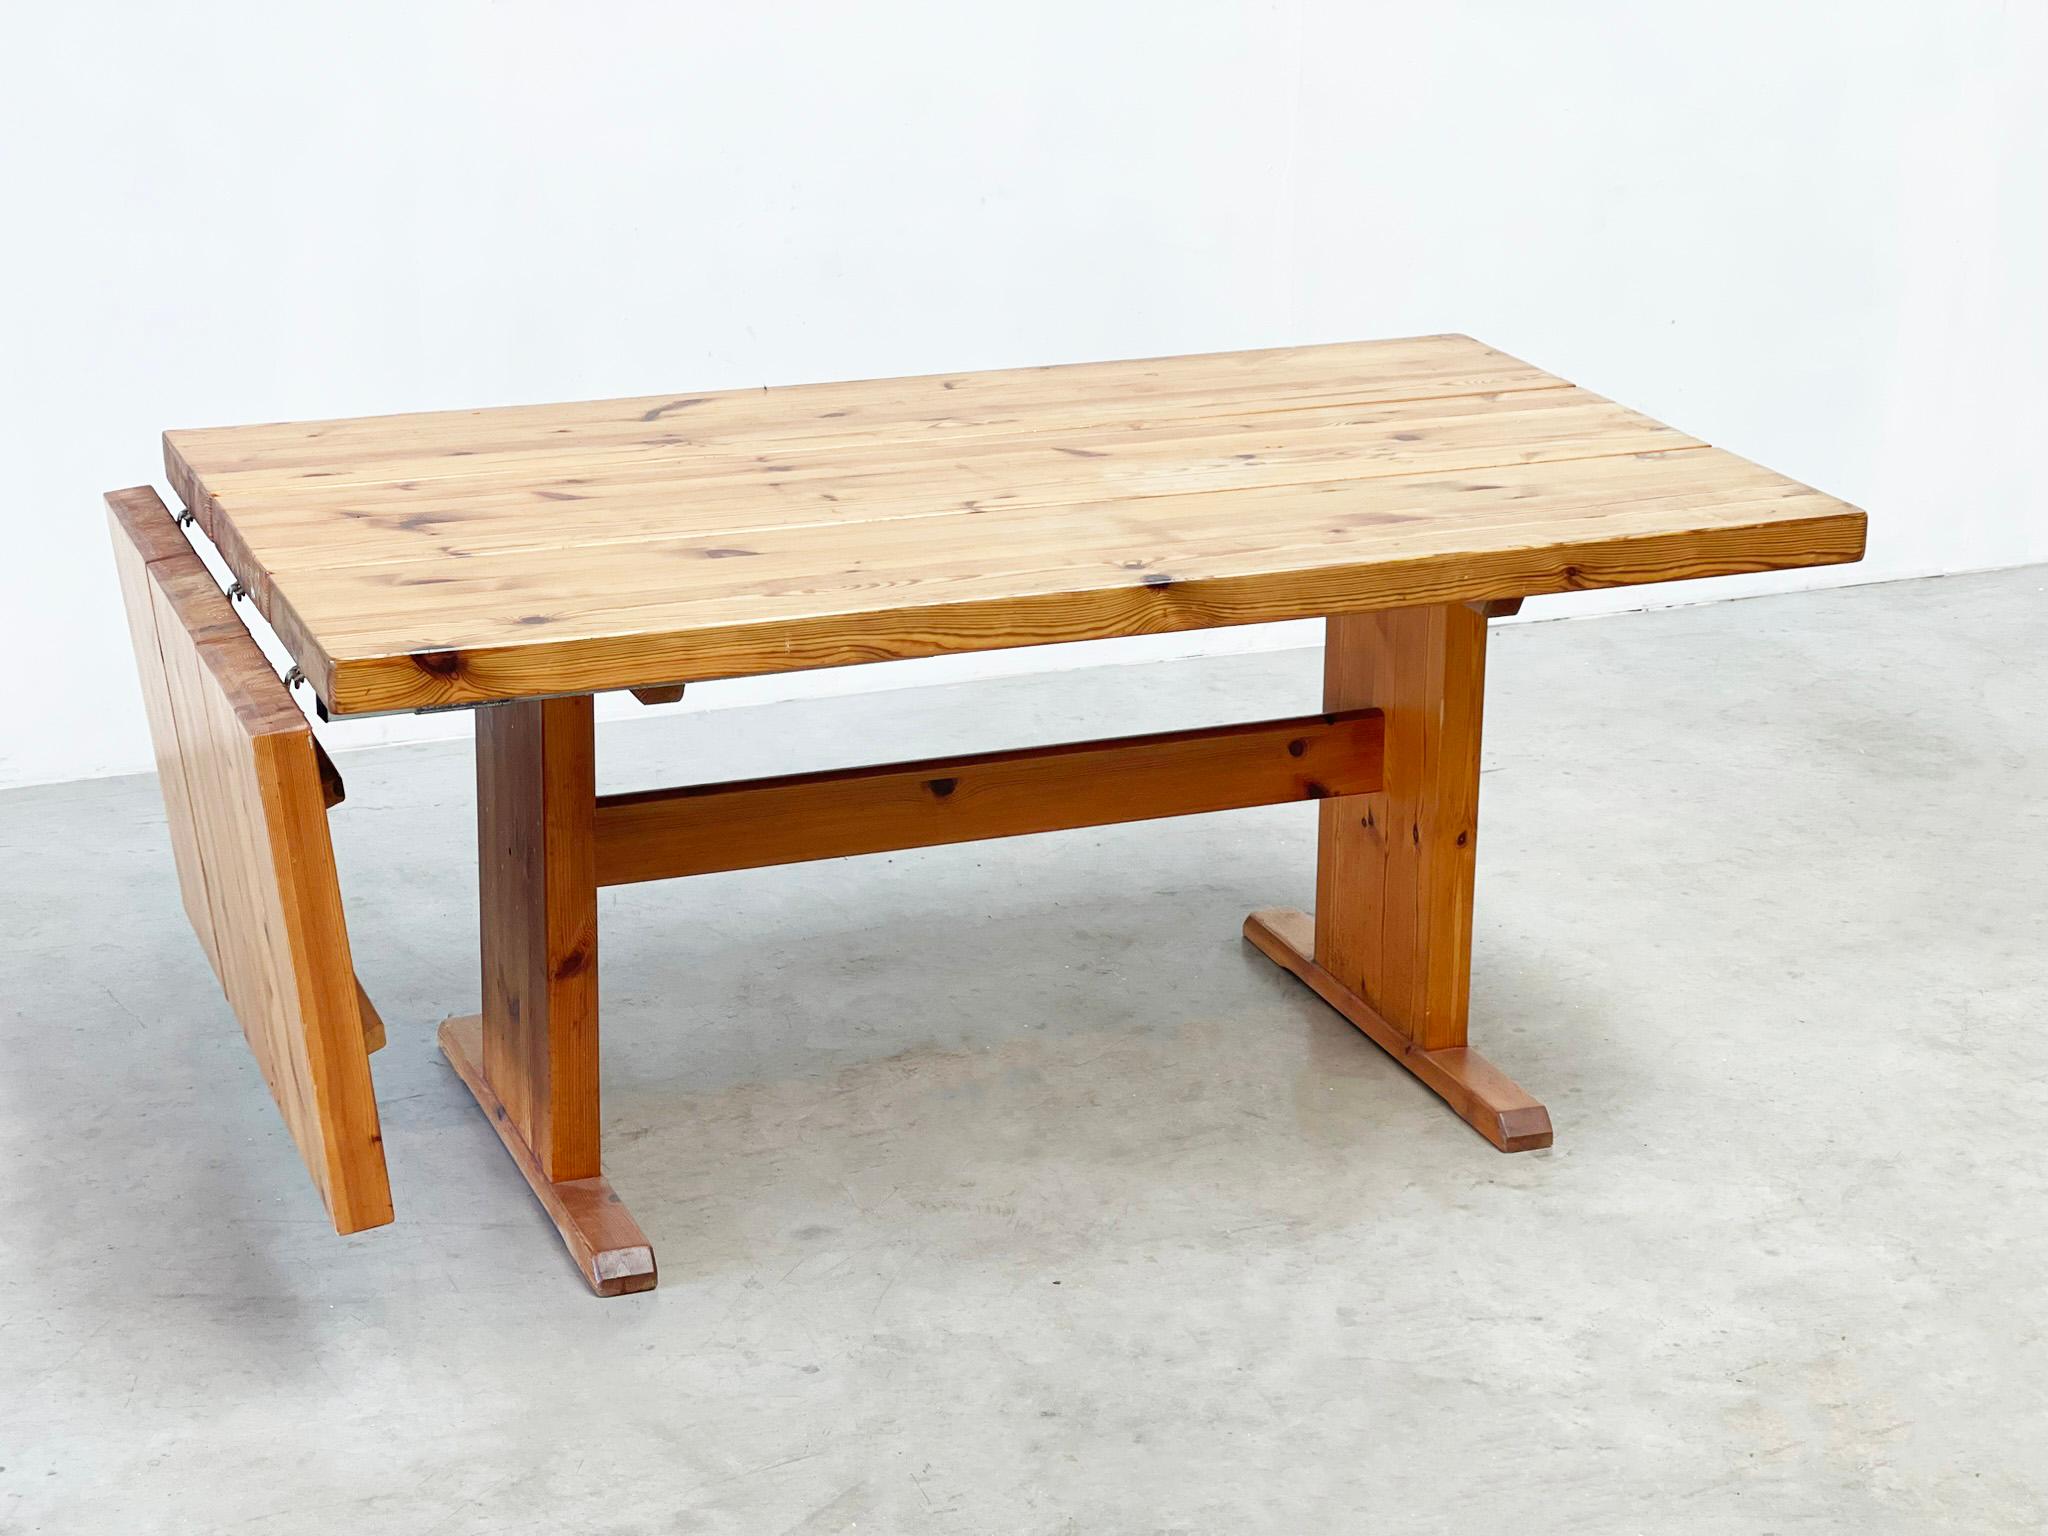 Table de salle à manger extensible en pin des années 1980
Table de salle à manger allemande. Cette table est parfaite comme table de cuisine ou de salle à manger.

La table a une belle texture de bois avec des signes minimes d'utilisation. Cette